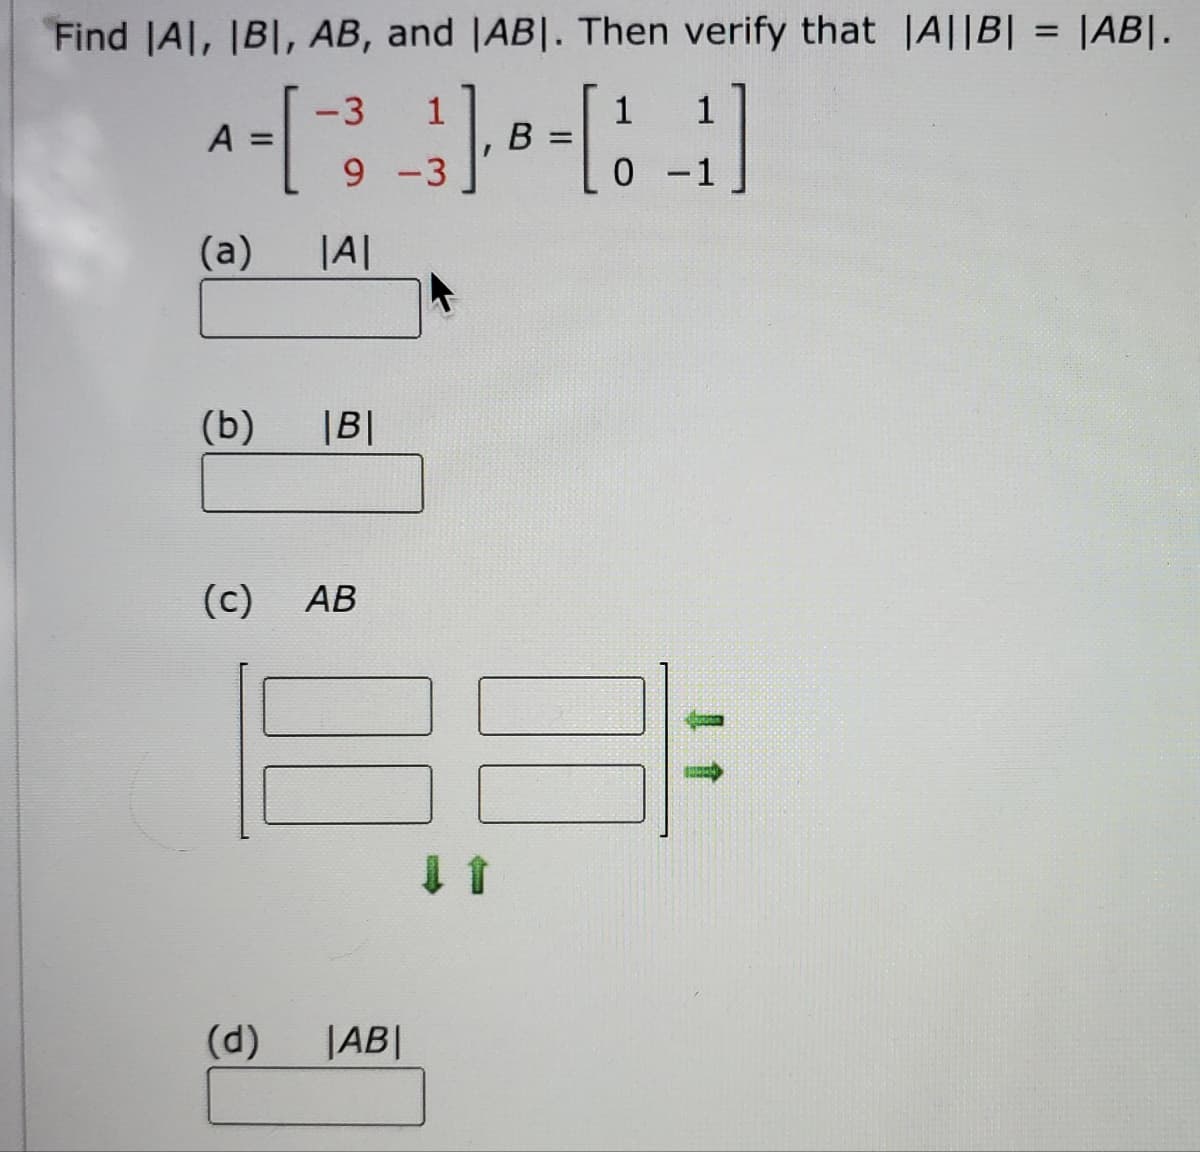 Find IAI, IBI, AB, and IABI. Then verify that |A||B| = |AB|.
-3
1
A =
[
_ } ], B = [1
[11]
0 -1
9-3
(a)
(b)
(c)
AB
(d) |AB|
|A|
|B|